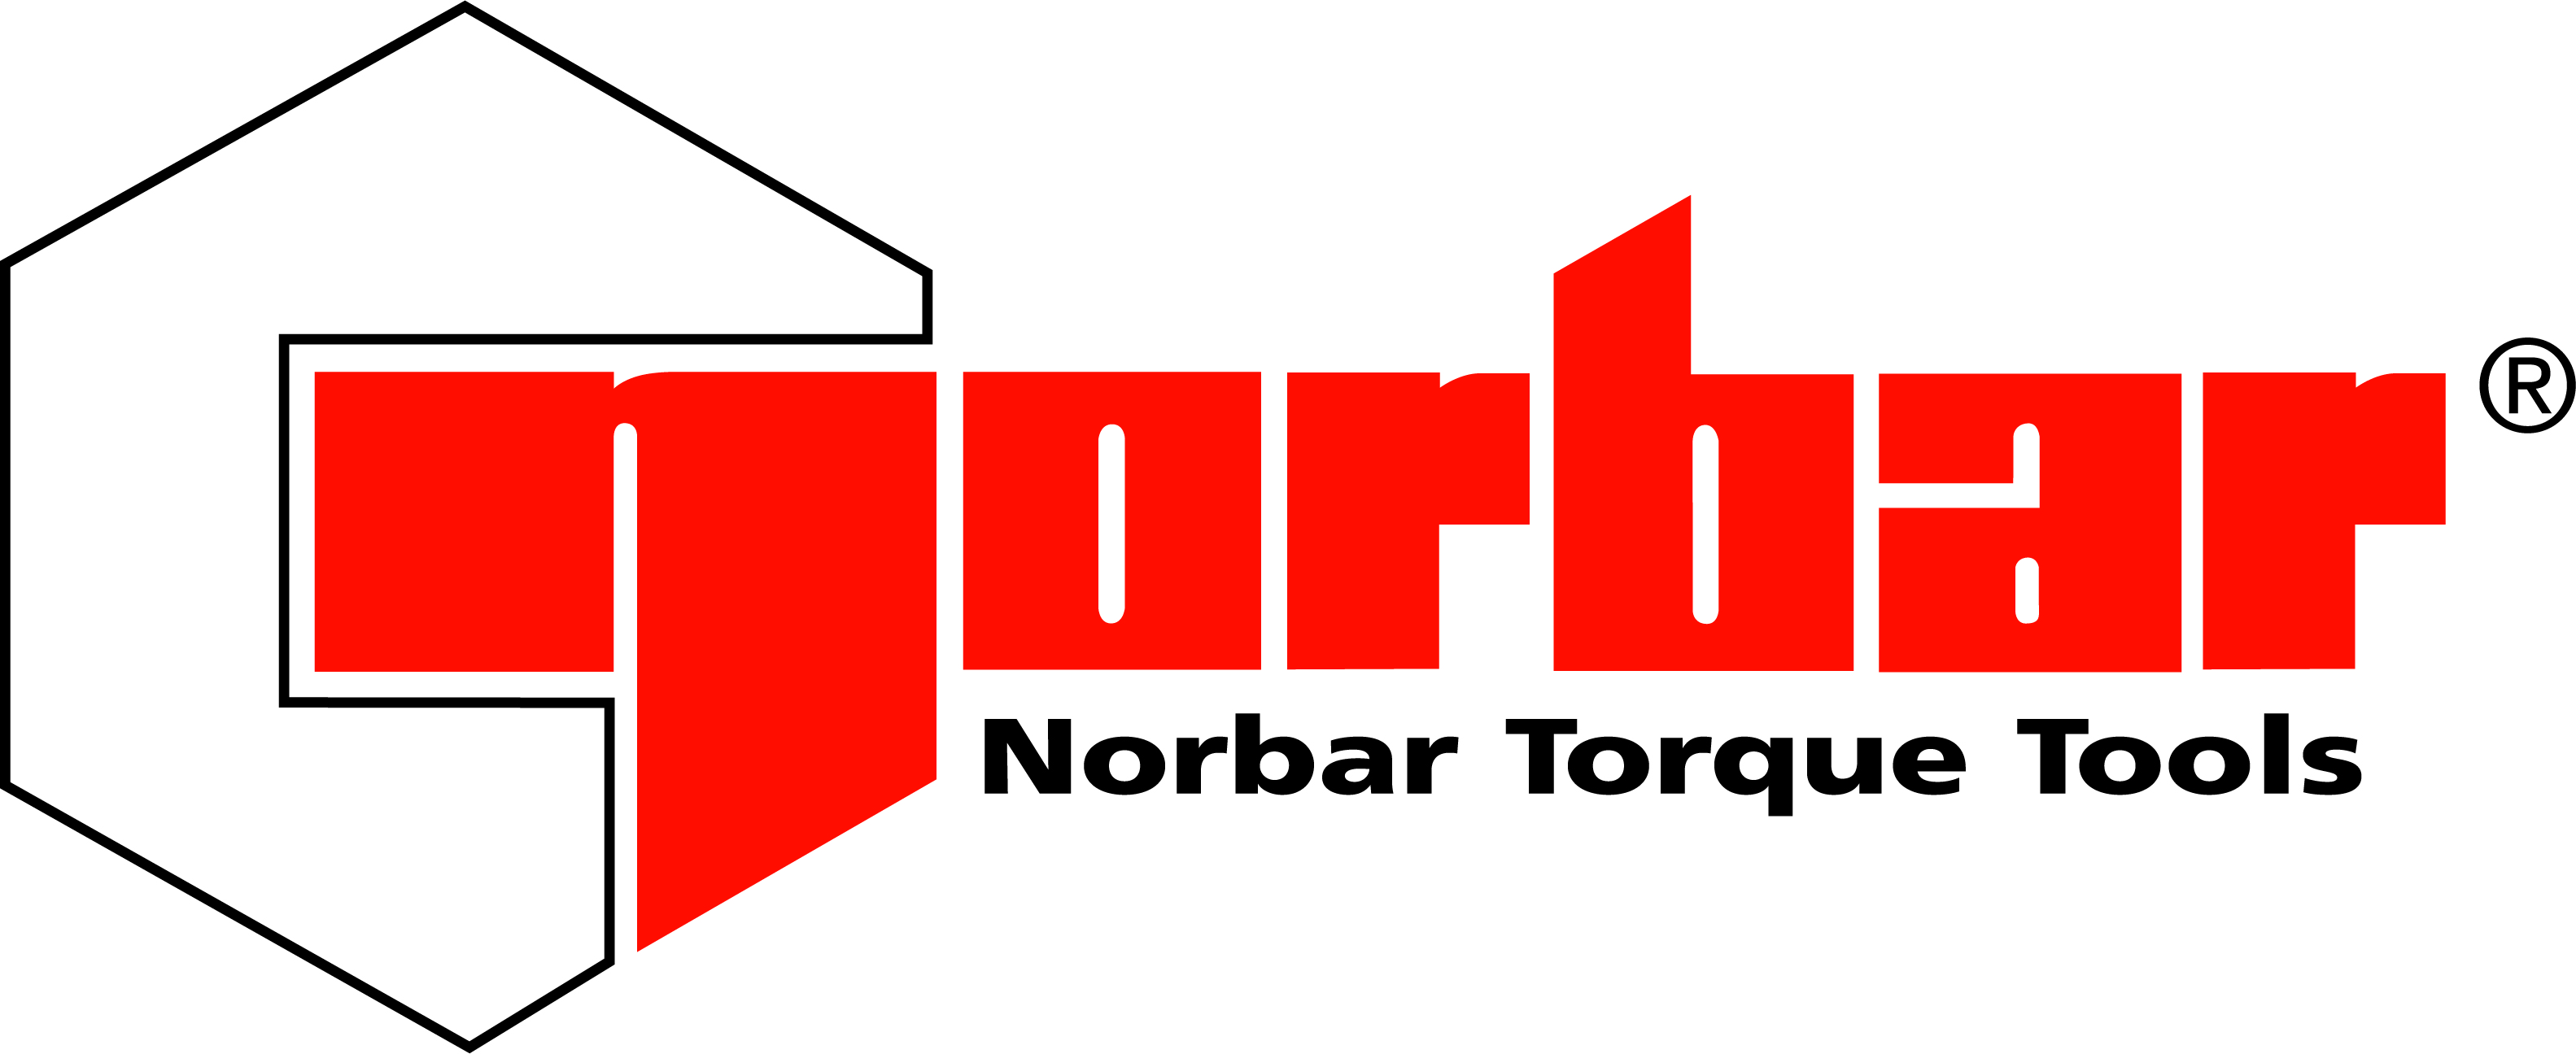 NORBAR TORQUE TOOLS